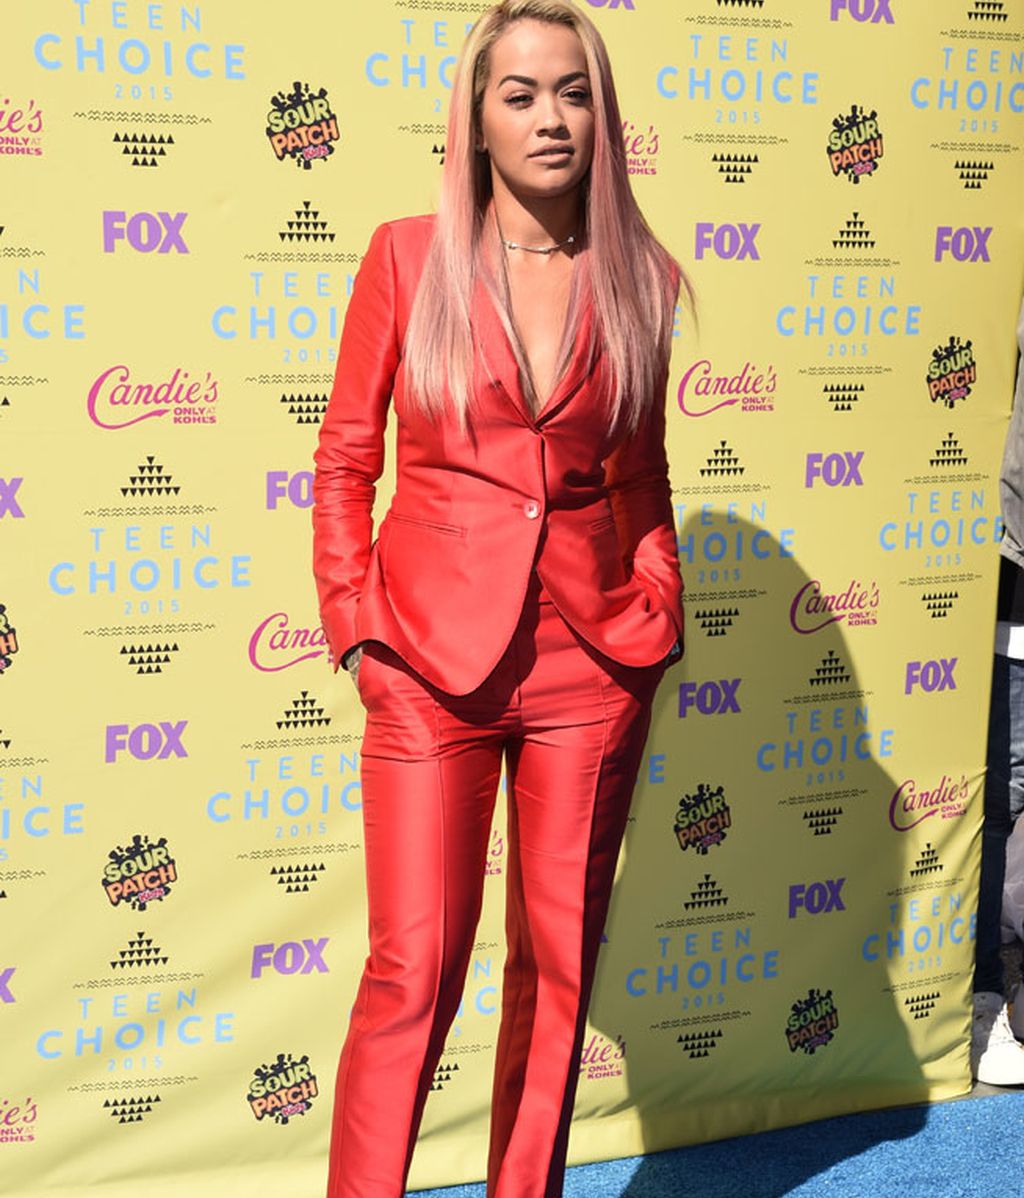 El escotazo de Britney o el pelo rojo de Rita Ora: los 'Teen Choice Awards', foto a foto